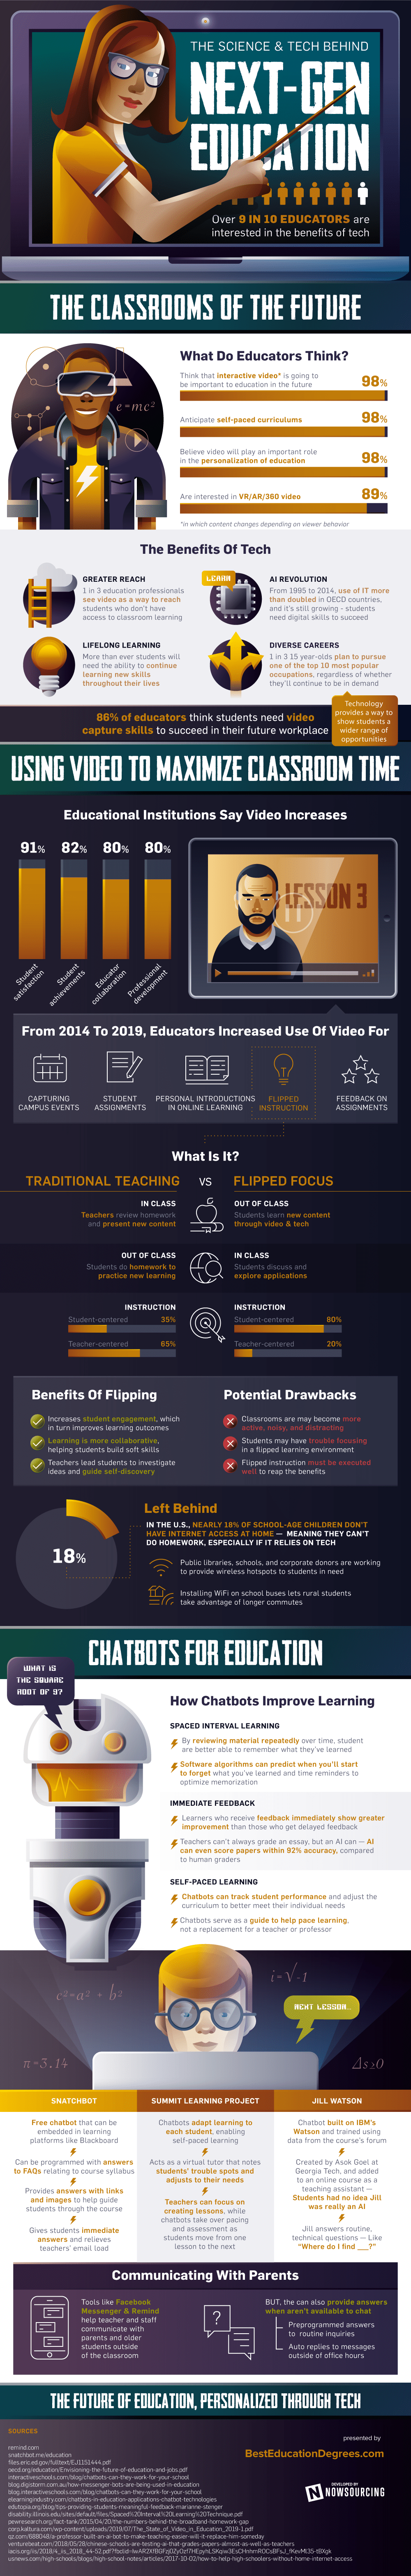 ReImaginingSchools-infographic